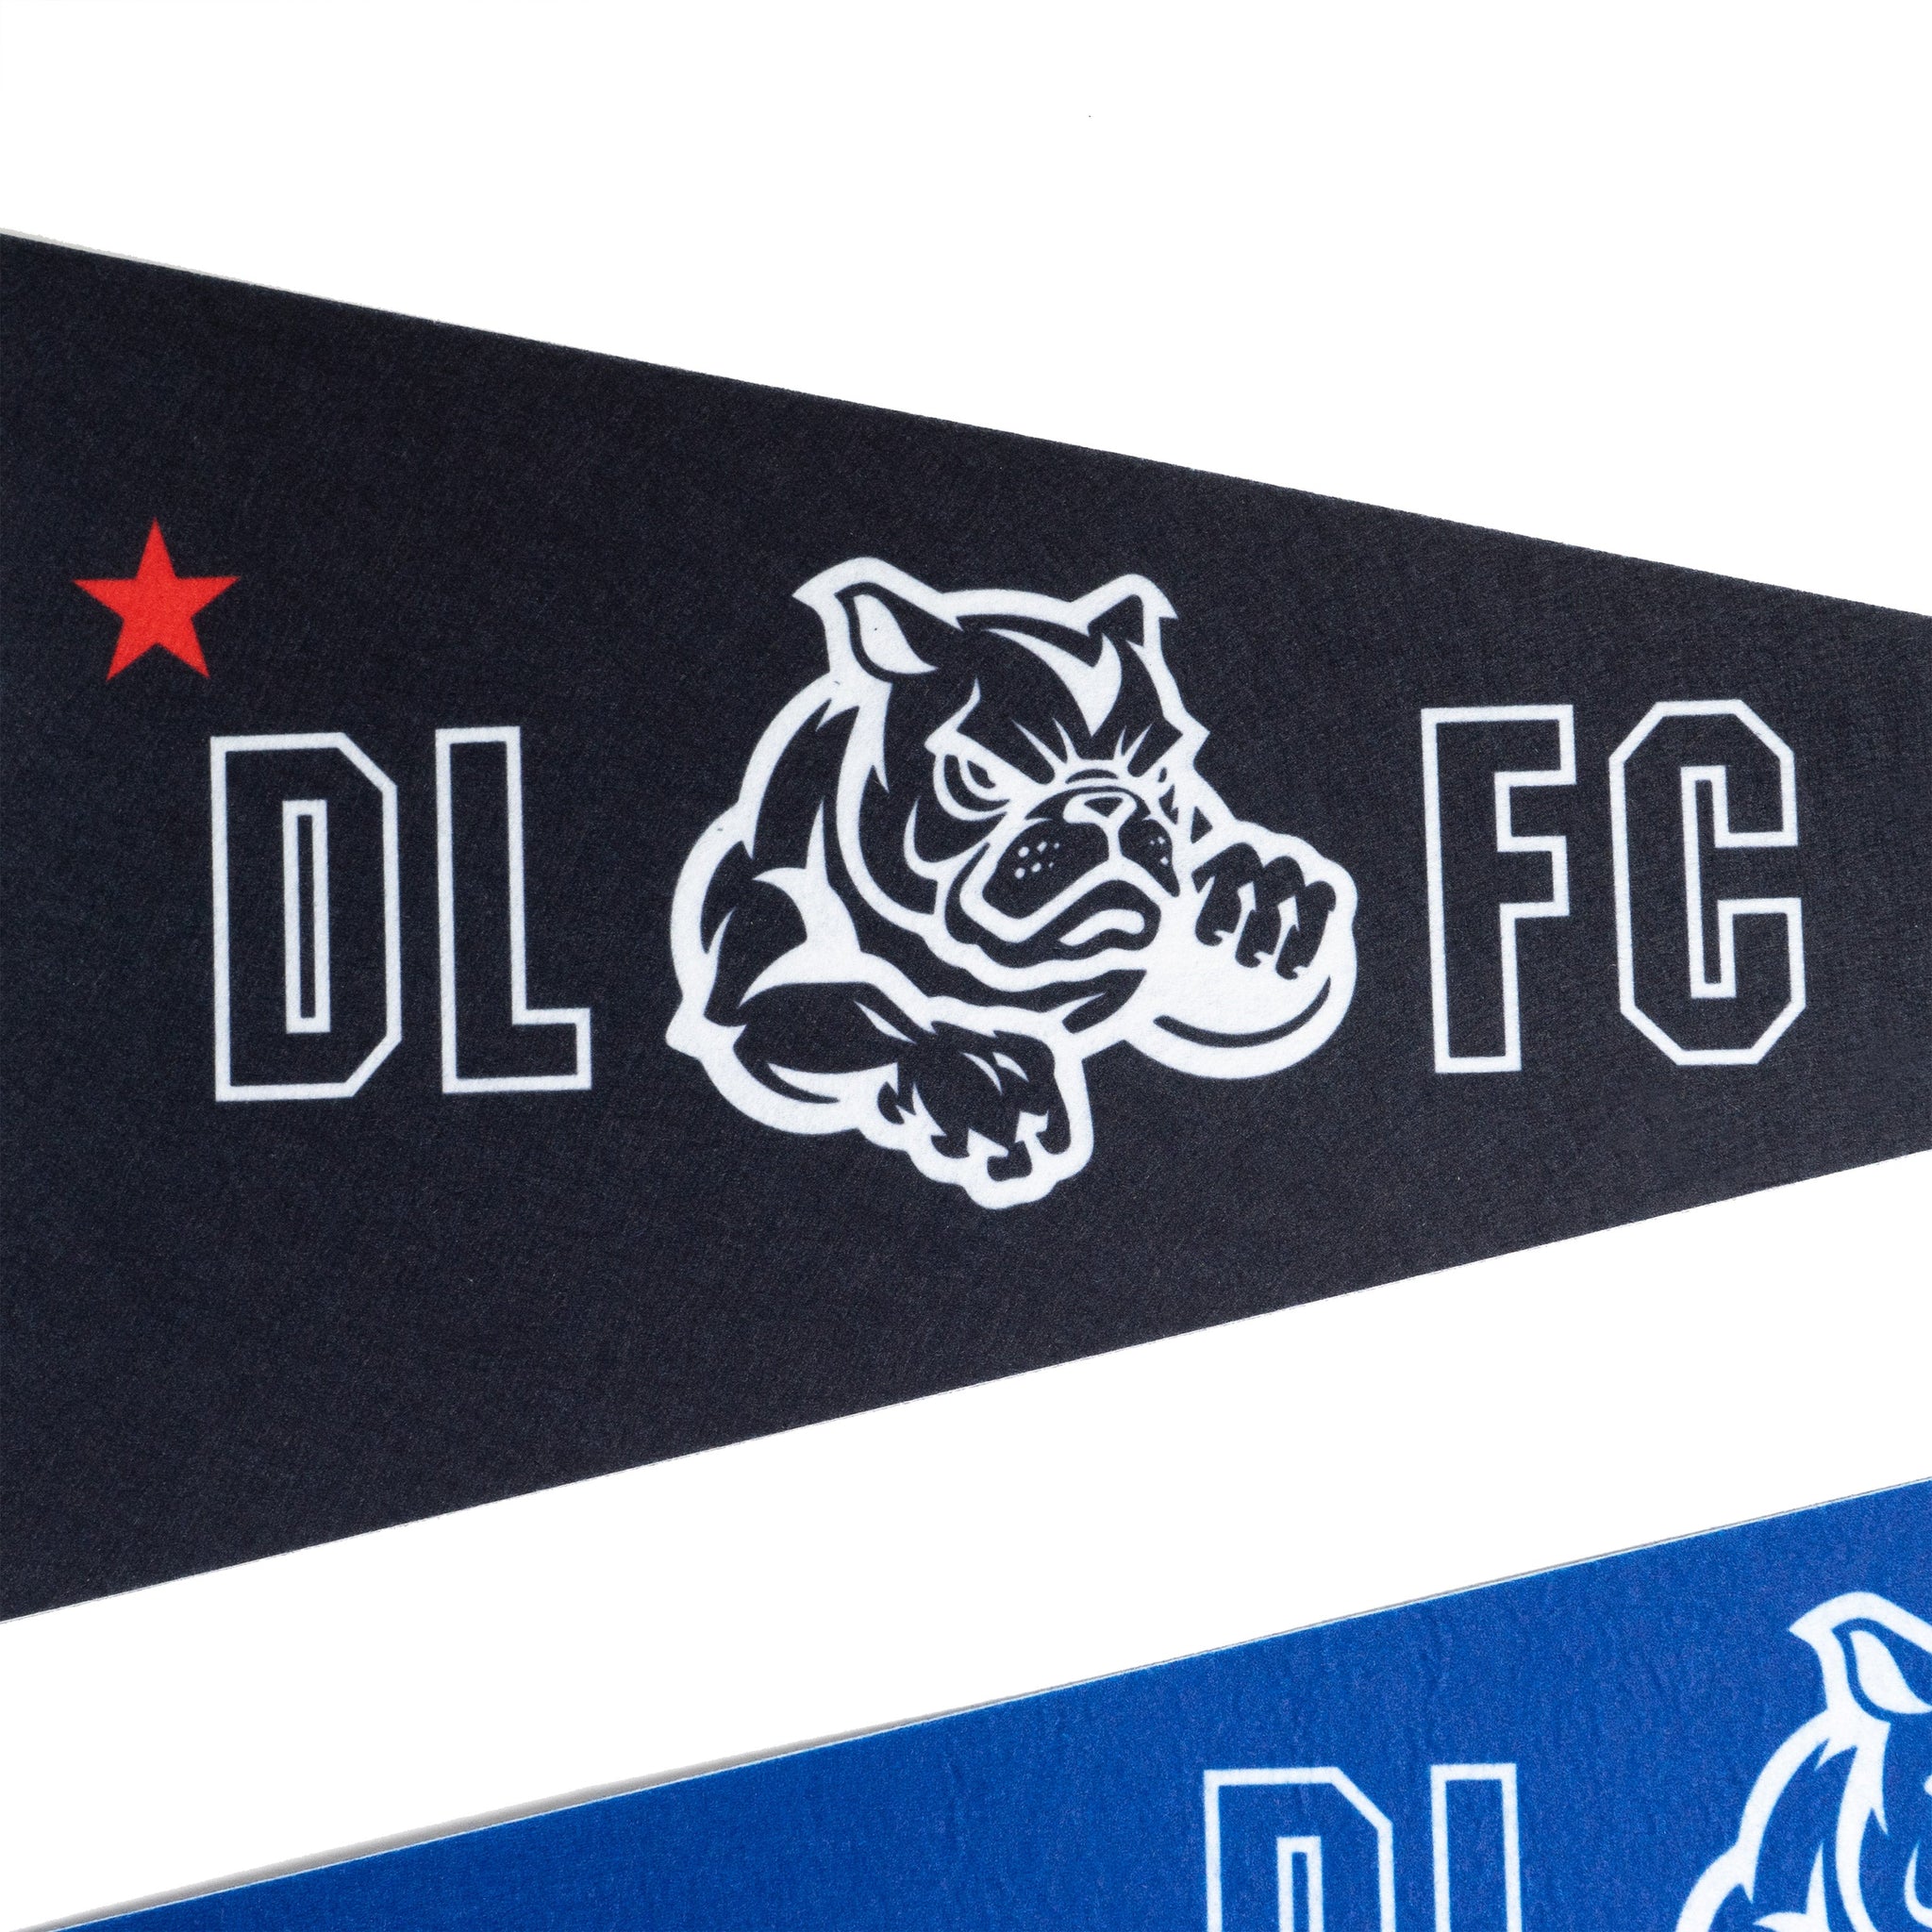 Pack de Banderines DLFC - Dellafuente F.C.